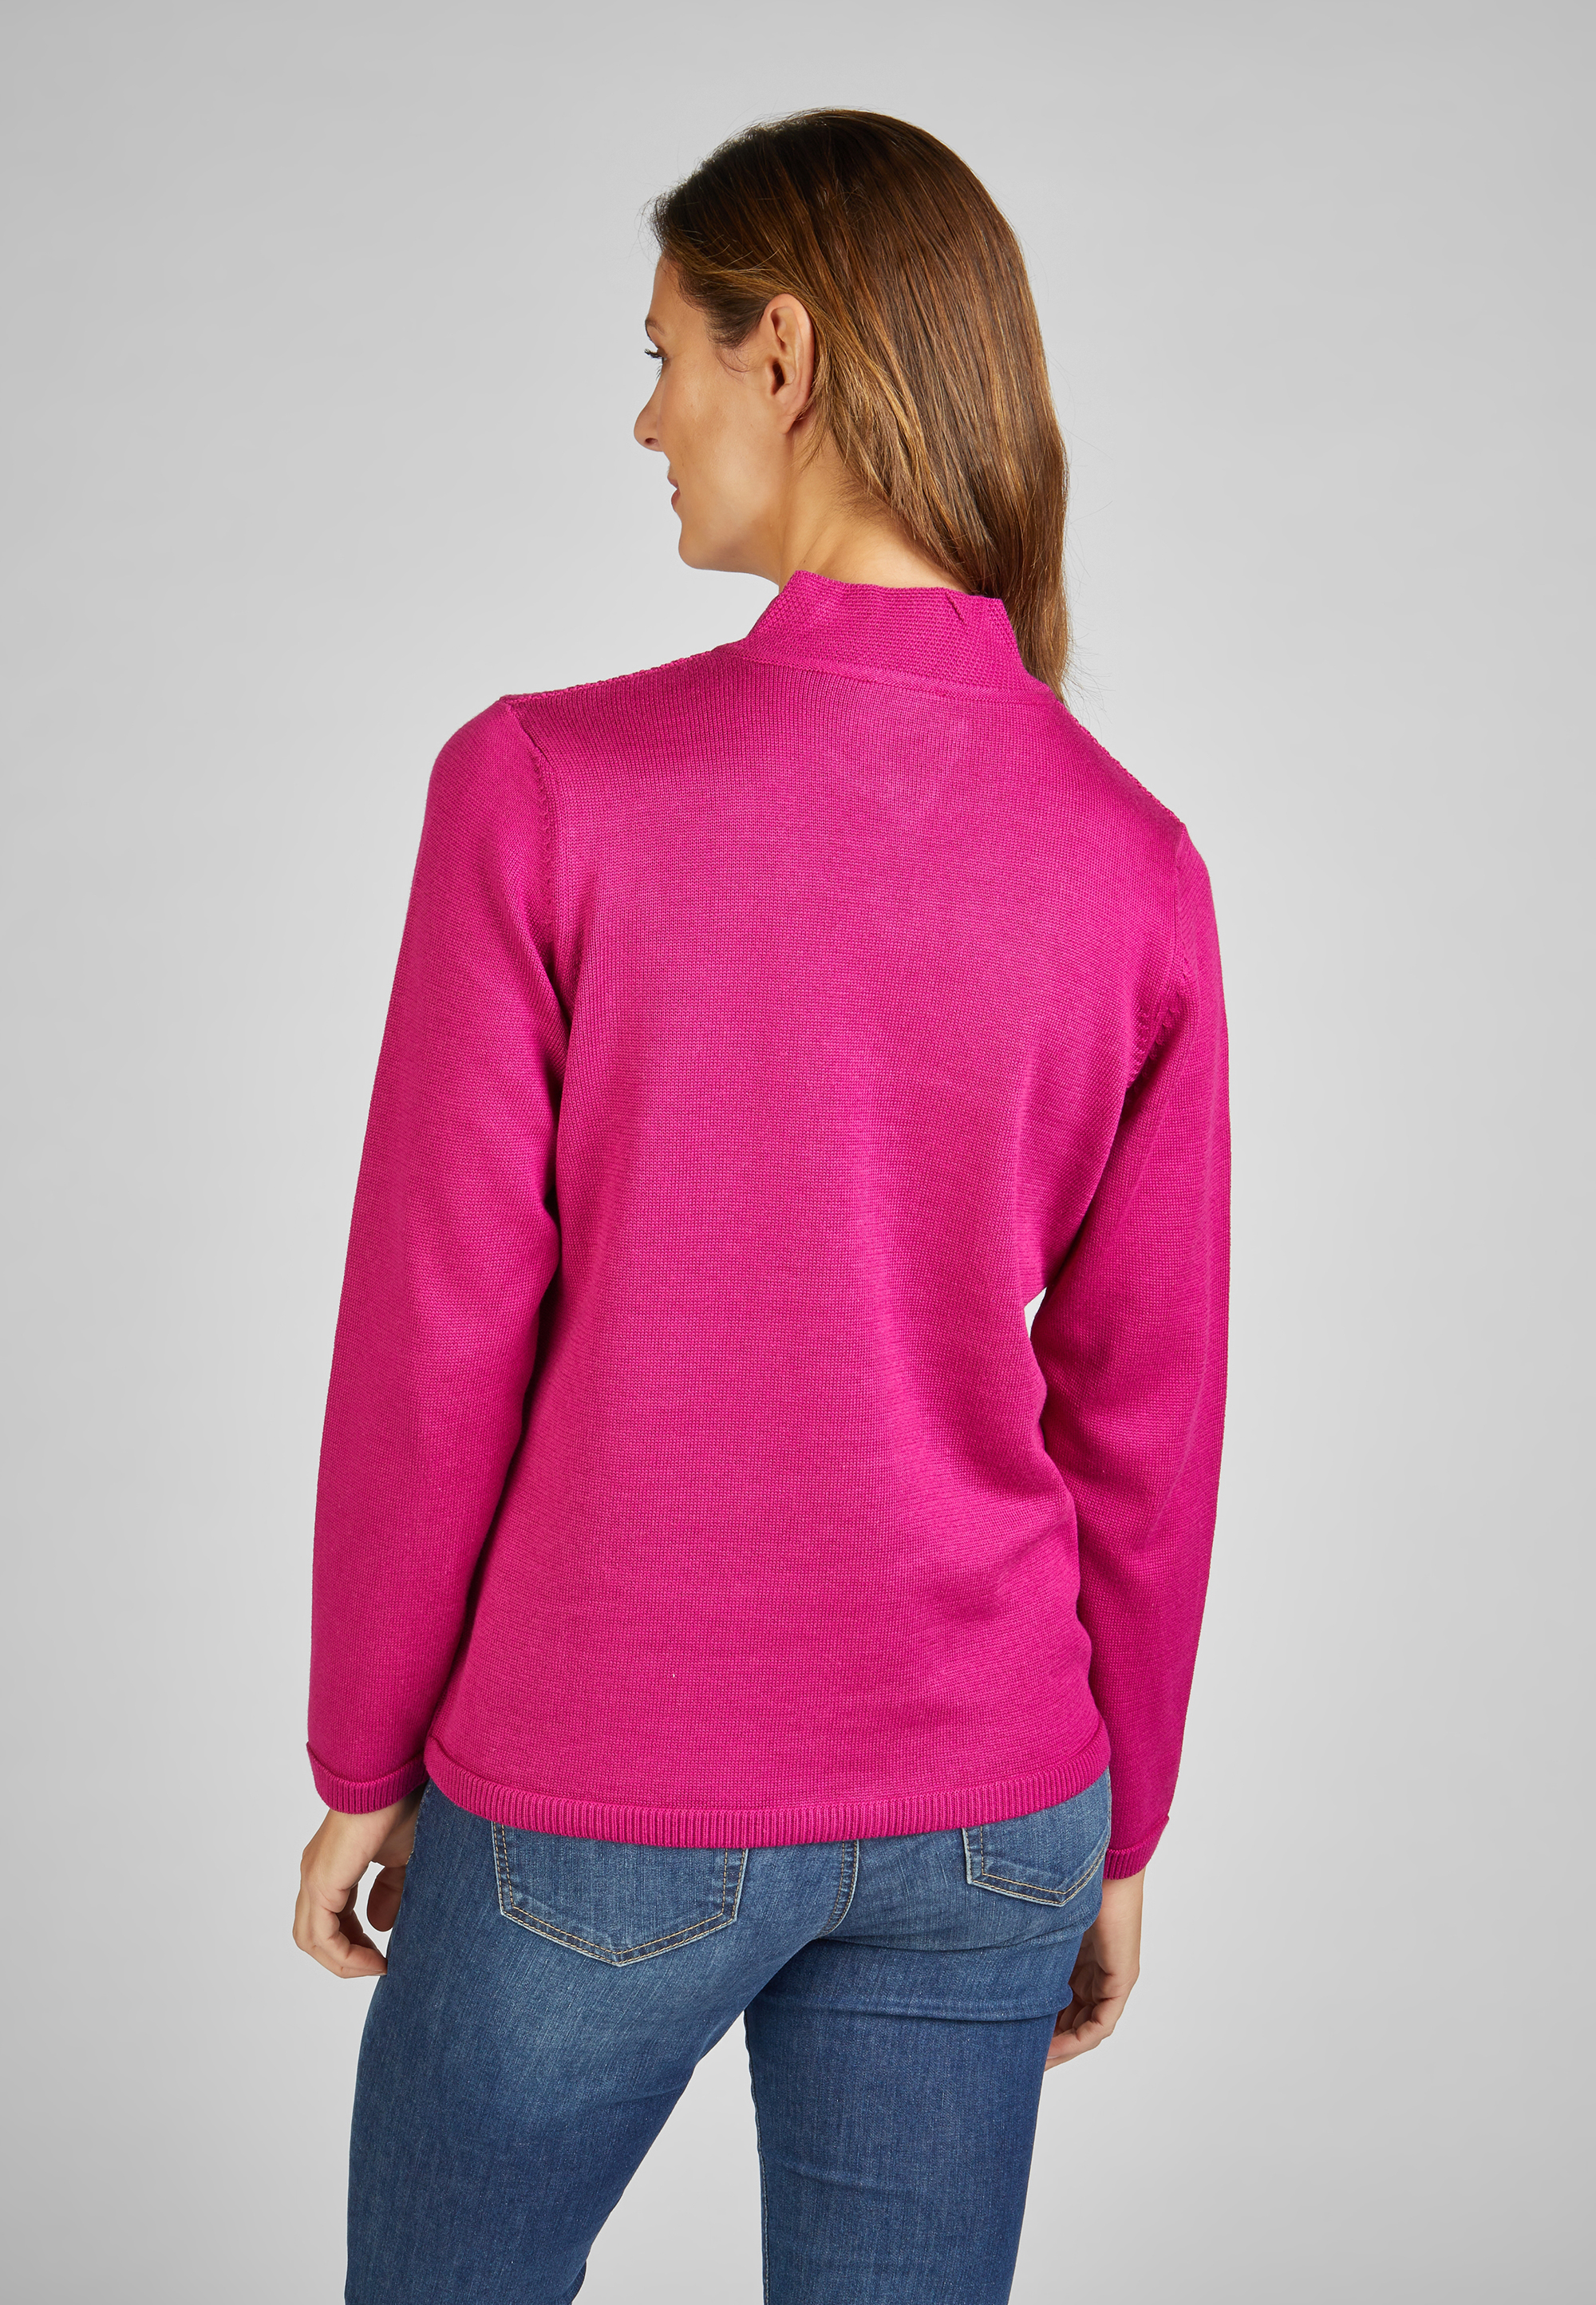 Strickjacke mit Reißverschluss Farbe: Größe: » Pink 36